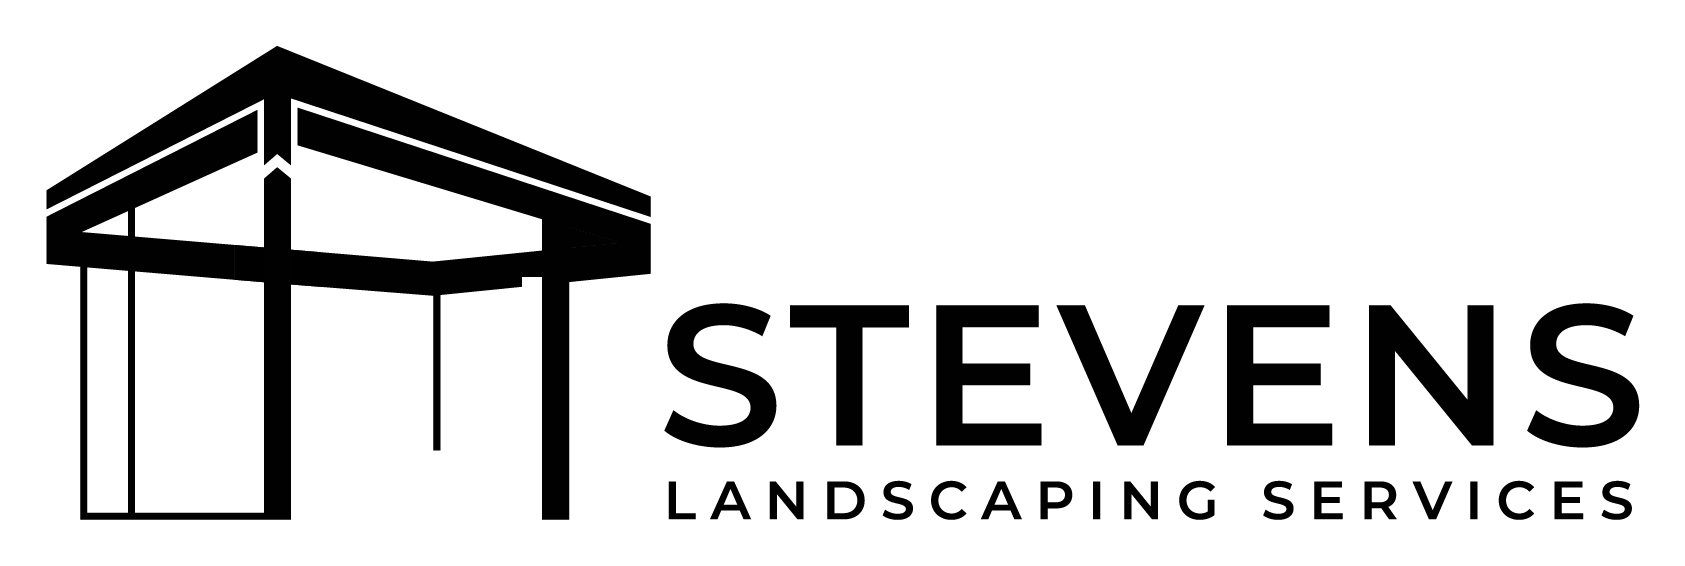 Stevens Landscaping Services